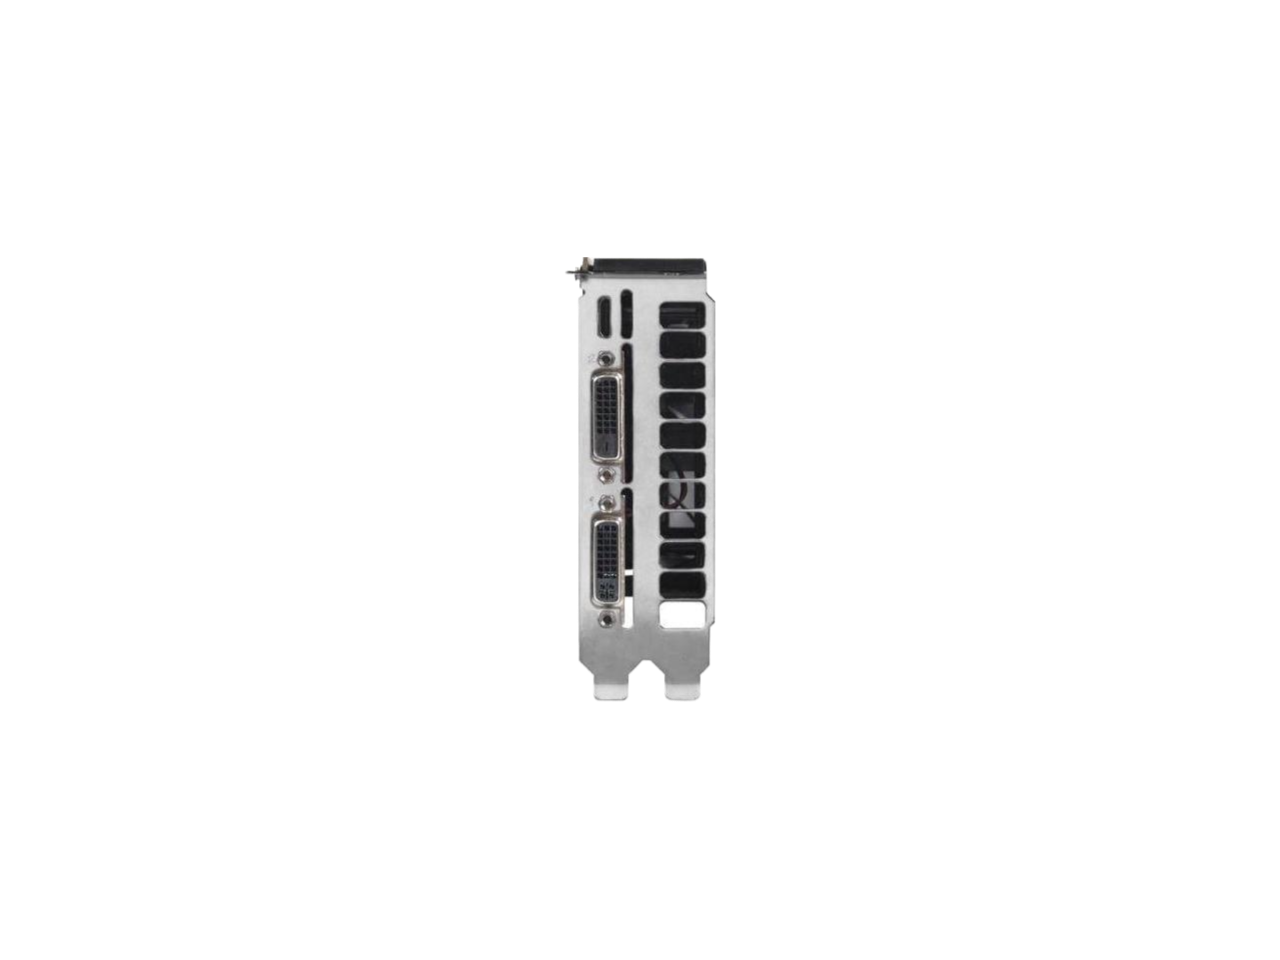 EVGA NVIDIA GeForce GT 740 FTW 2GB GDDR5 2DVI/Mini HDMI PCI-Express Video Card  02G-P4-3744-KR